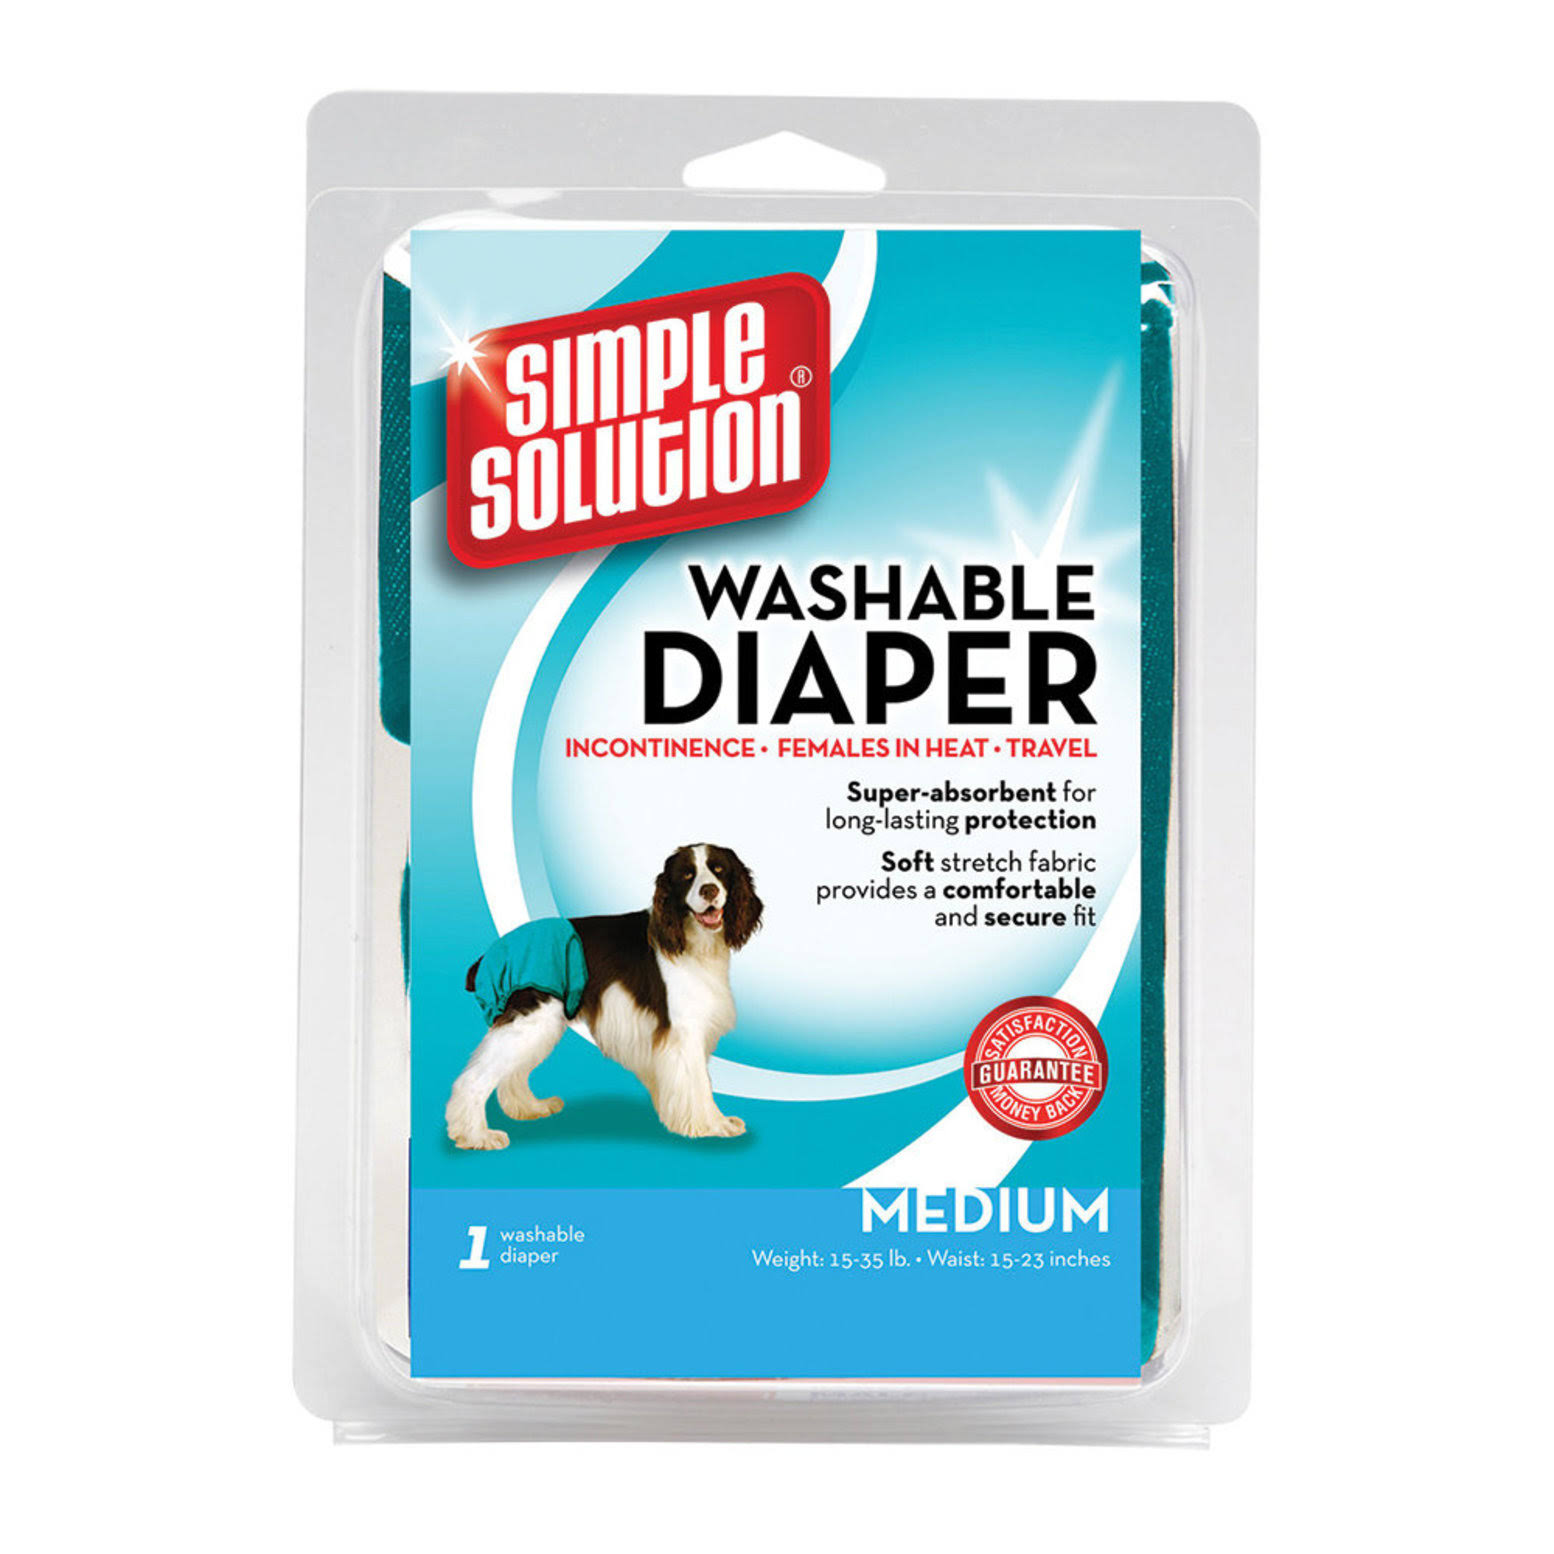 Simple Solution Washable Diaper - Medium